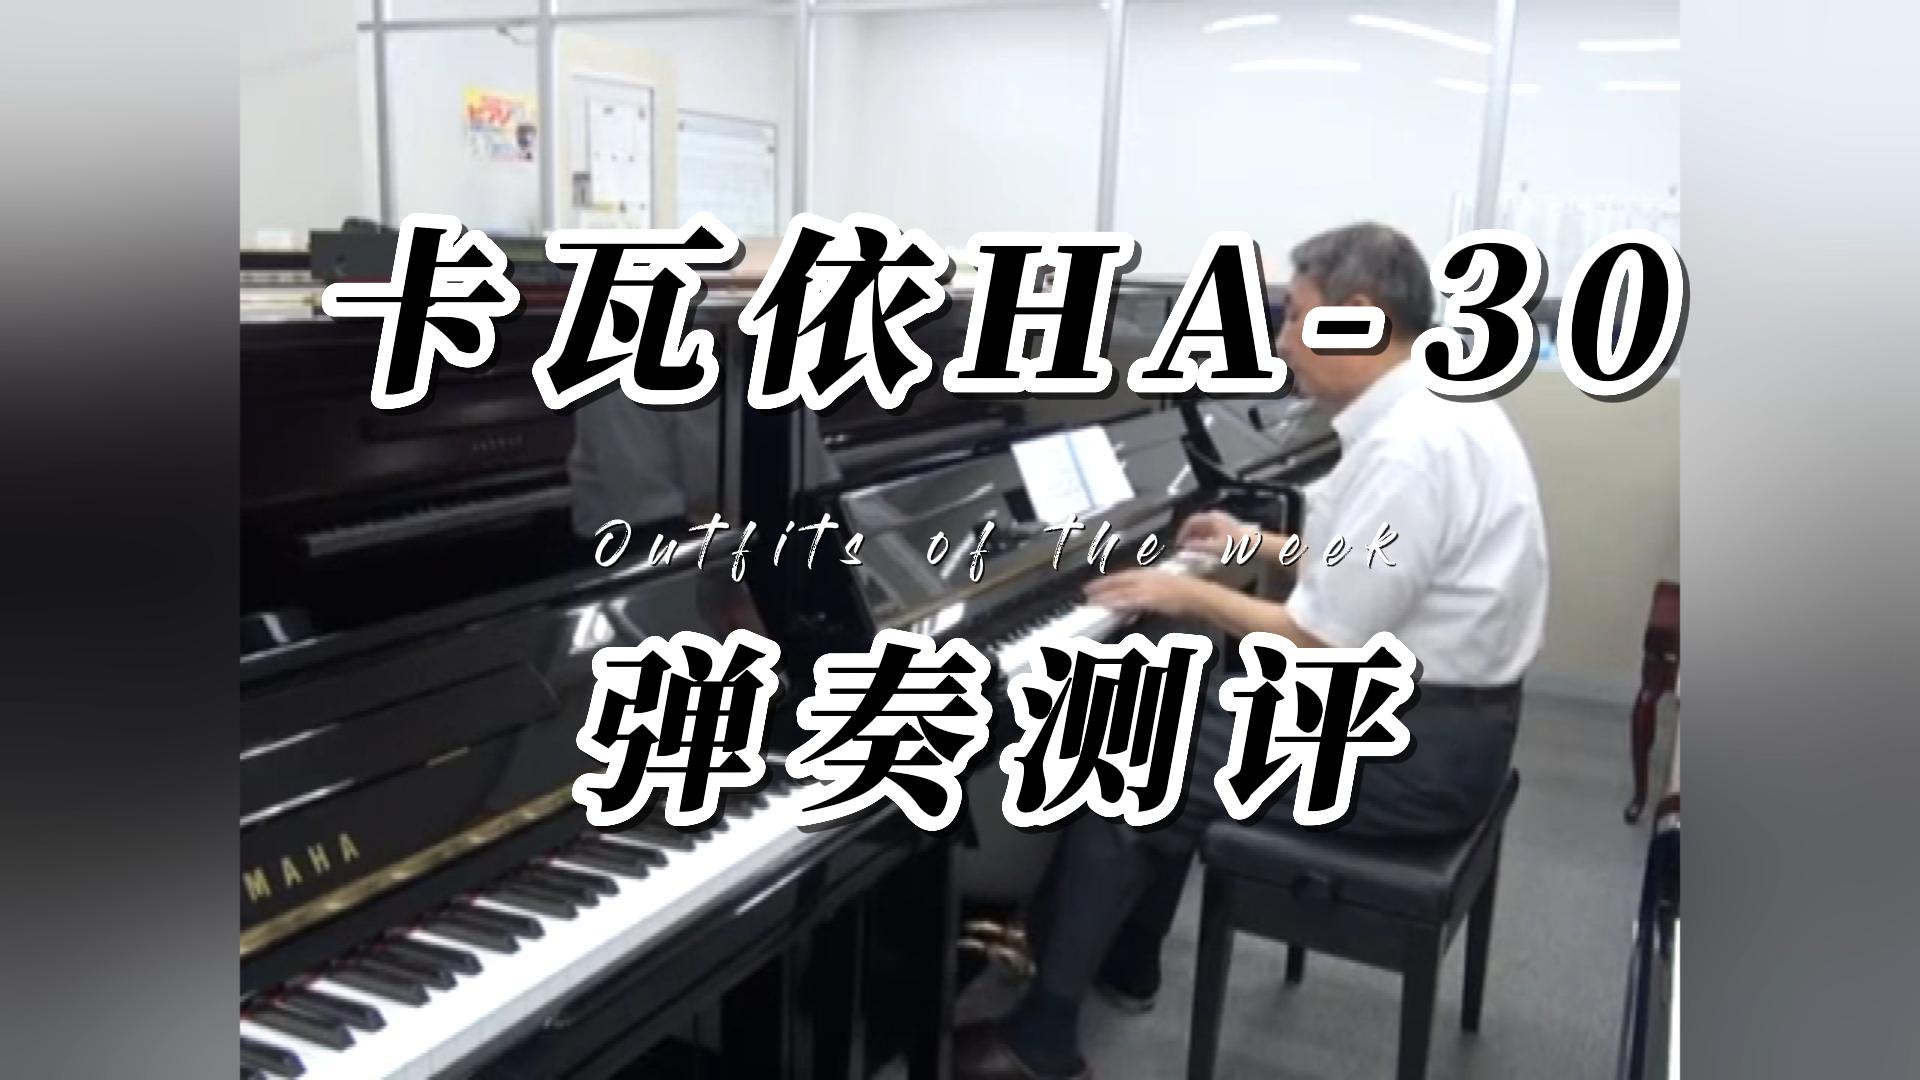 KAWAI 卡瓦依HA-30立式钢琴弹奏分享-柏通琴行整理